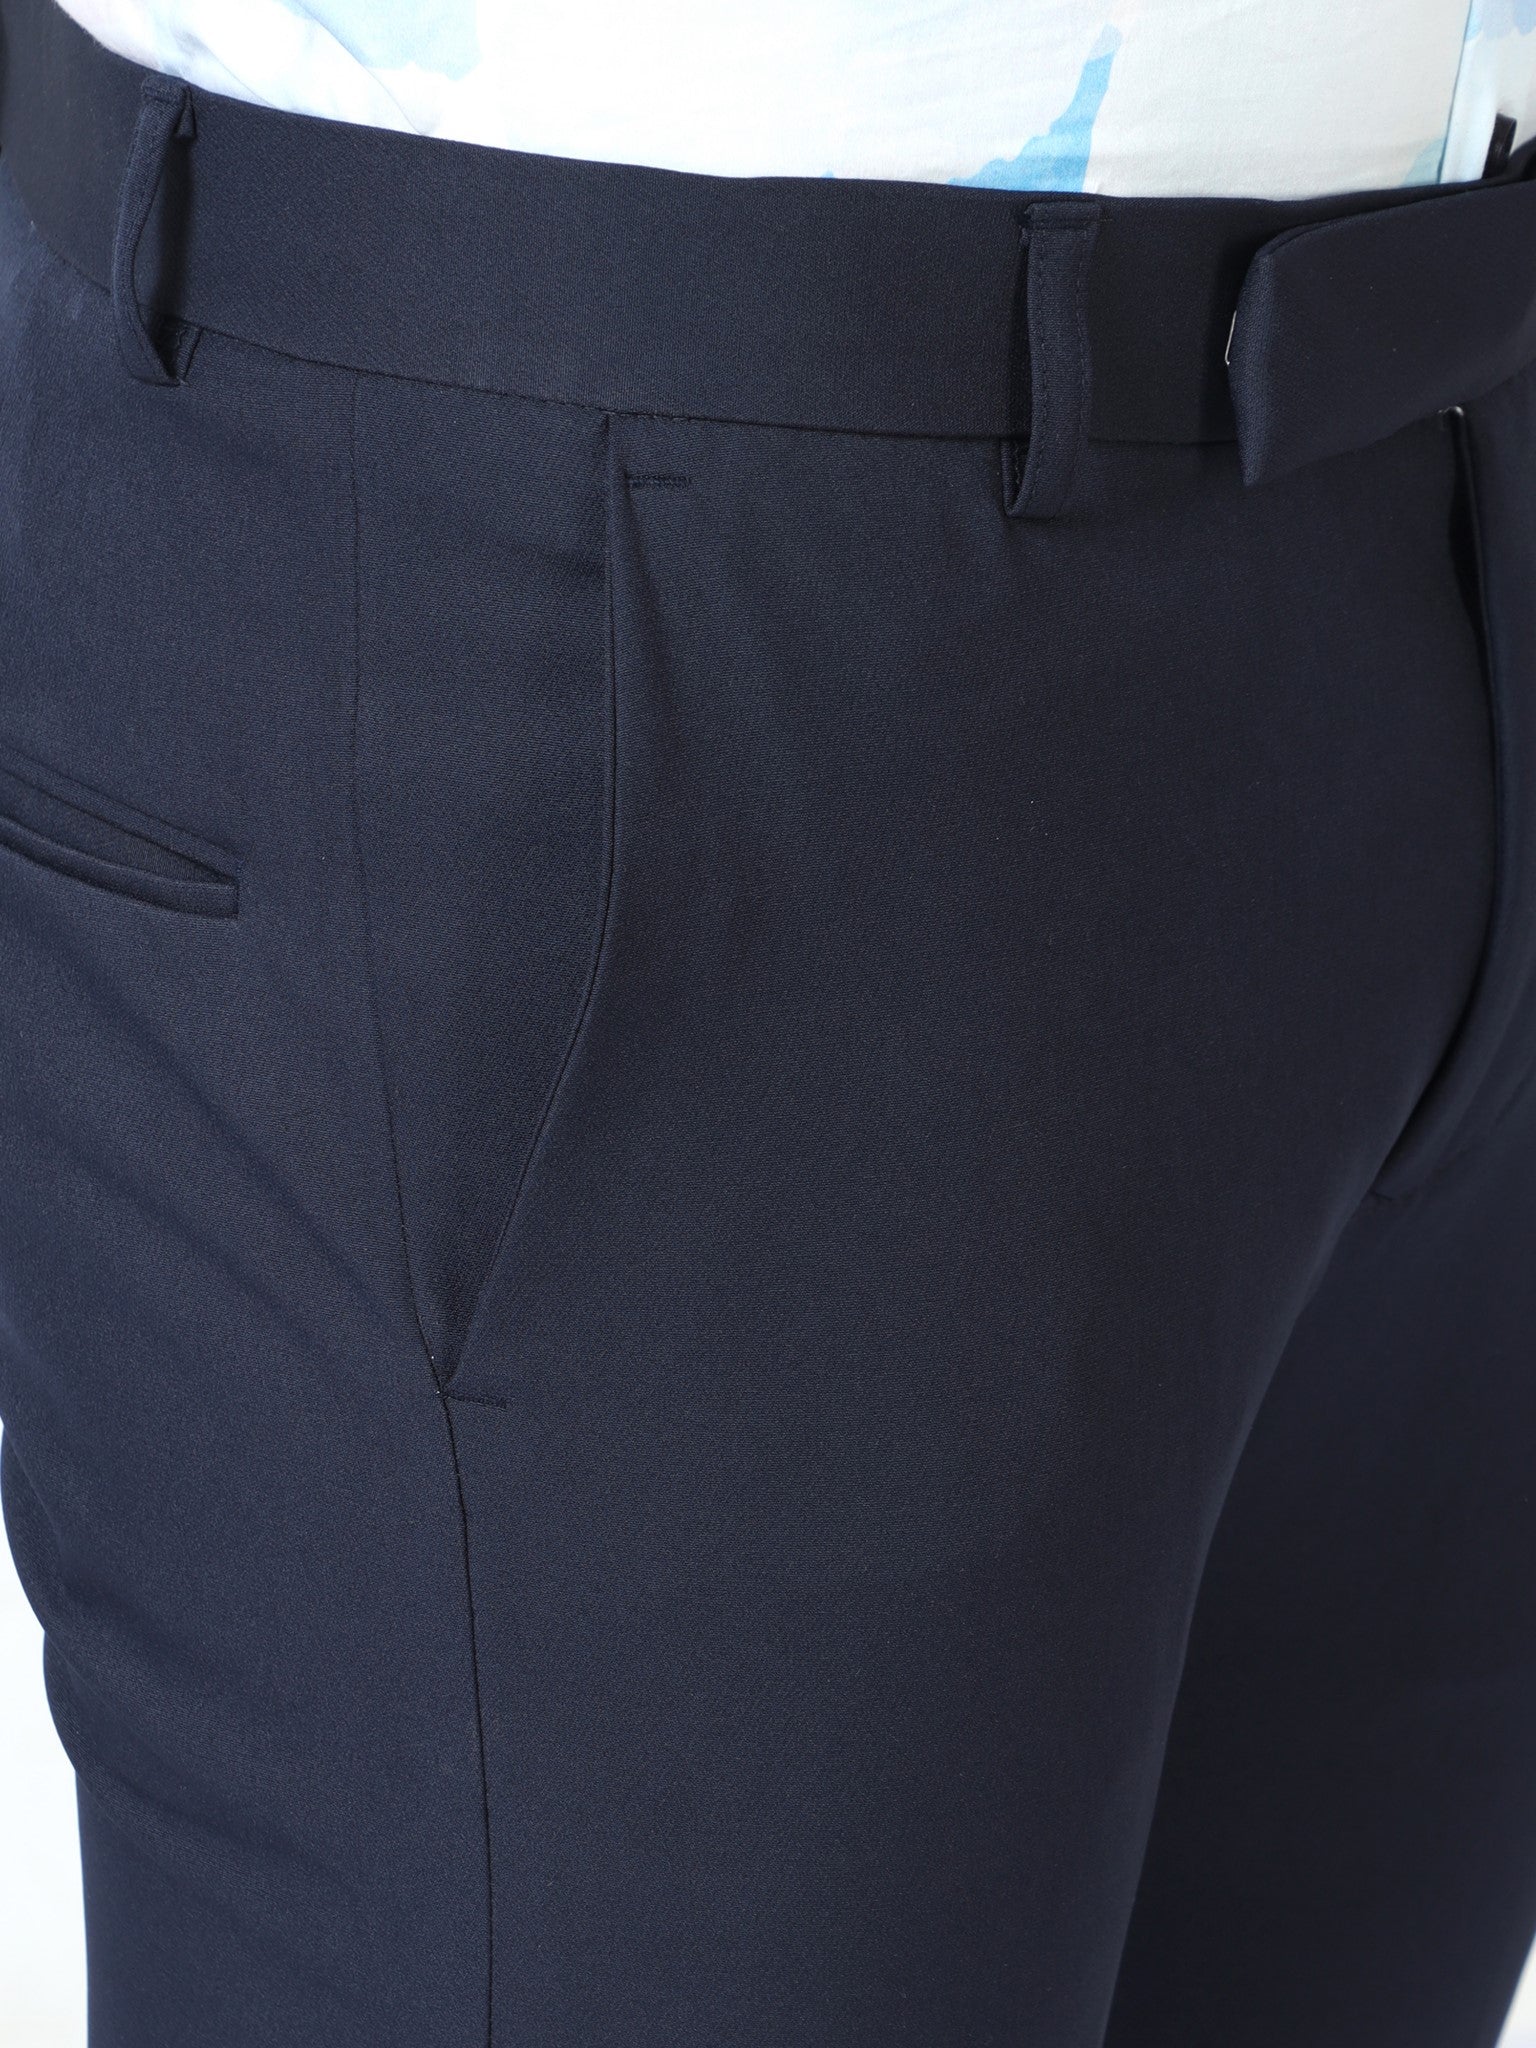 Slack Navy Trouser